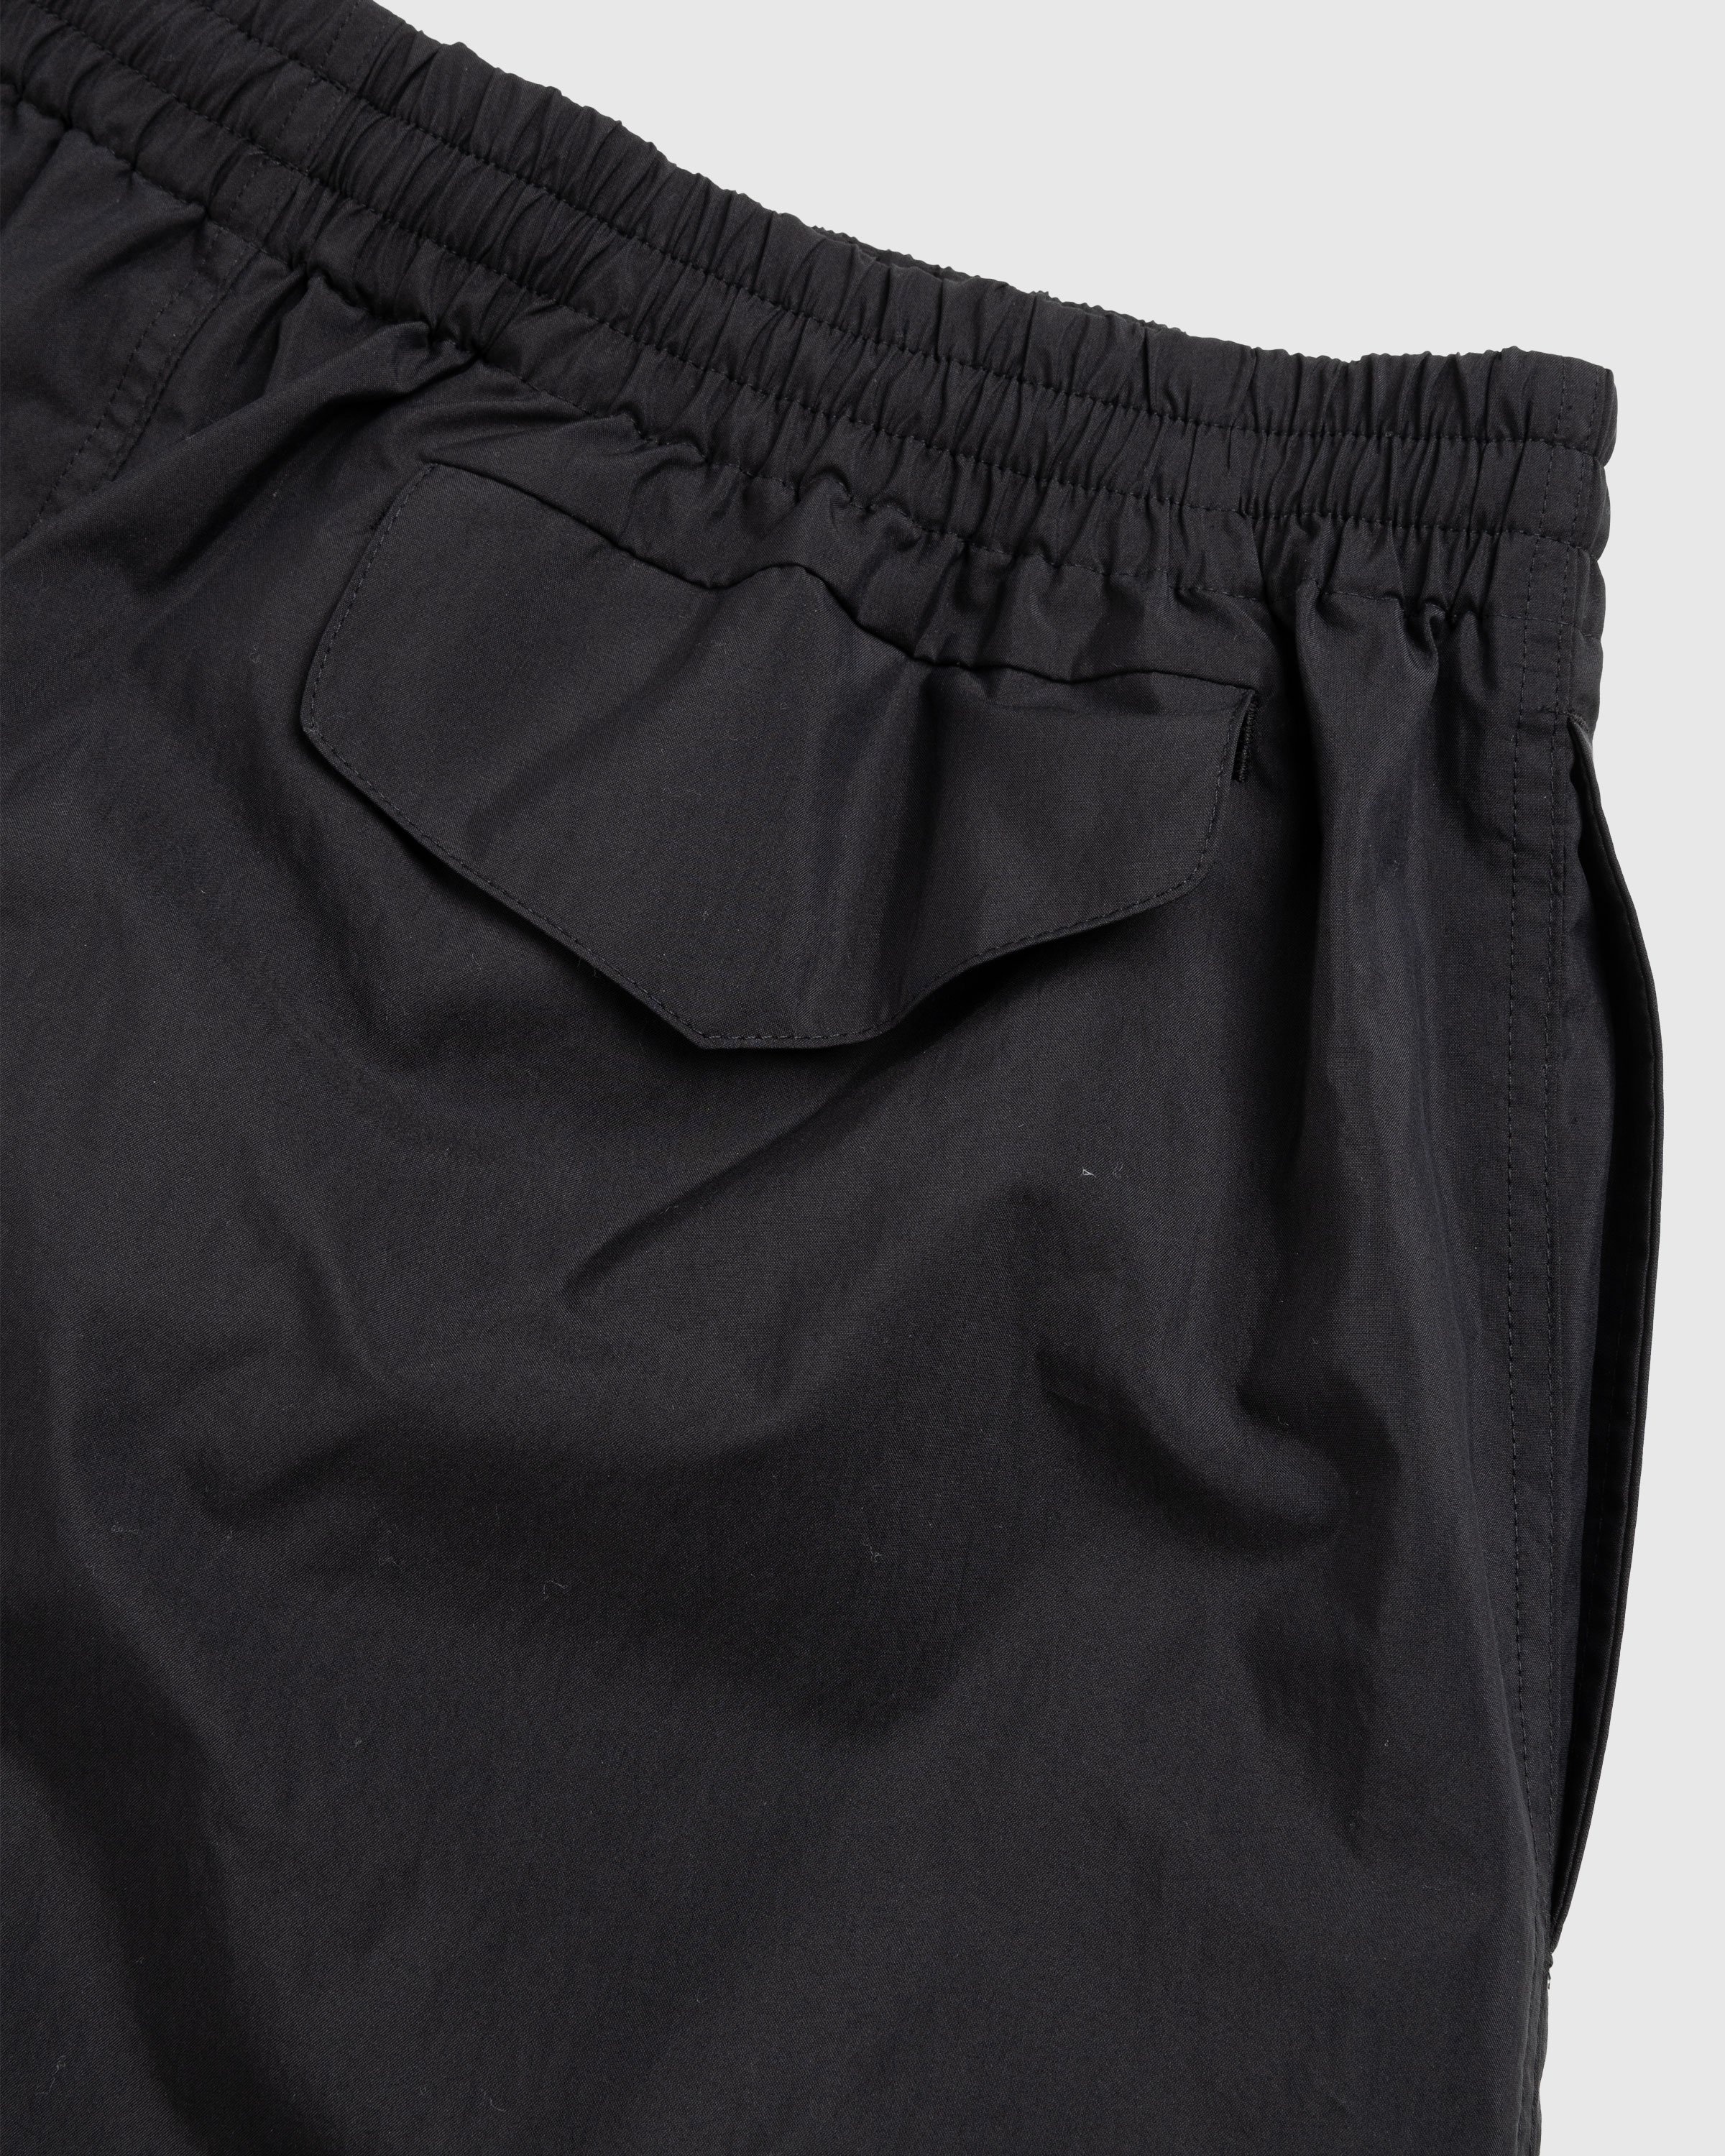 Auralee – Washed Cotton Nylon Weather Easy Shorts Black